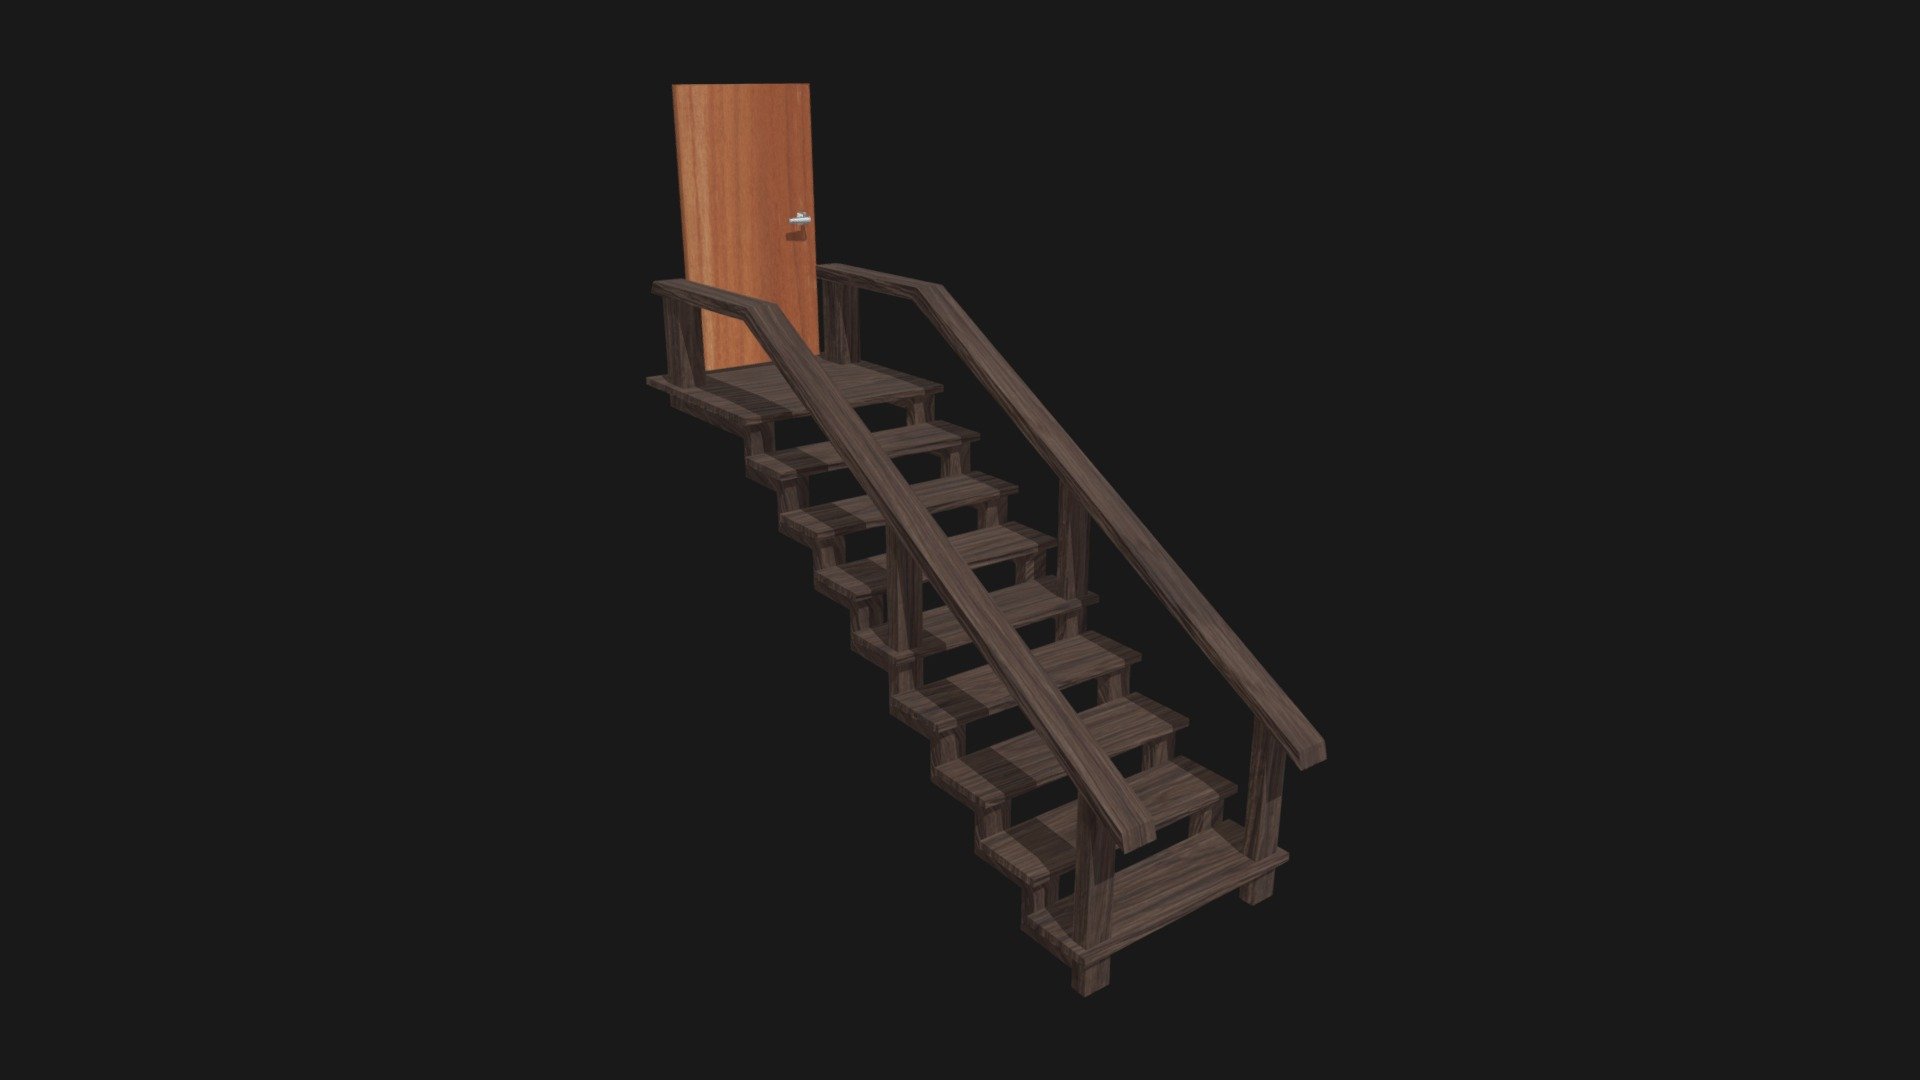 Basement stair and door - Basement Stair and Door - 3D model by diegosimao (@diegobsimao) 3d model